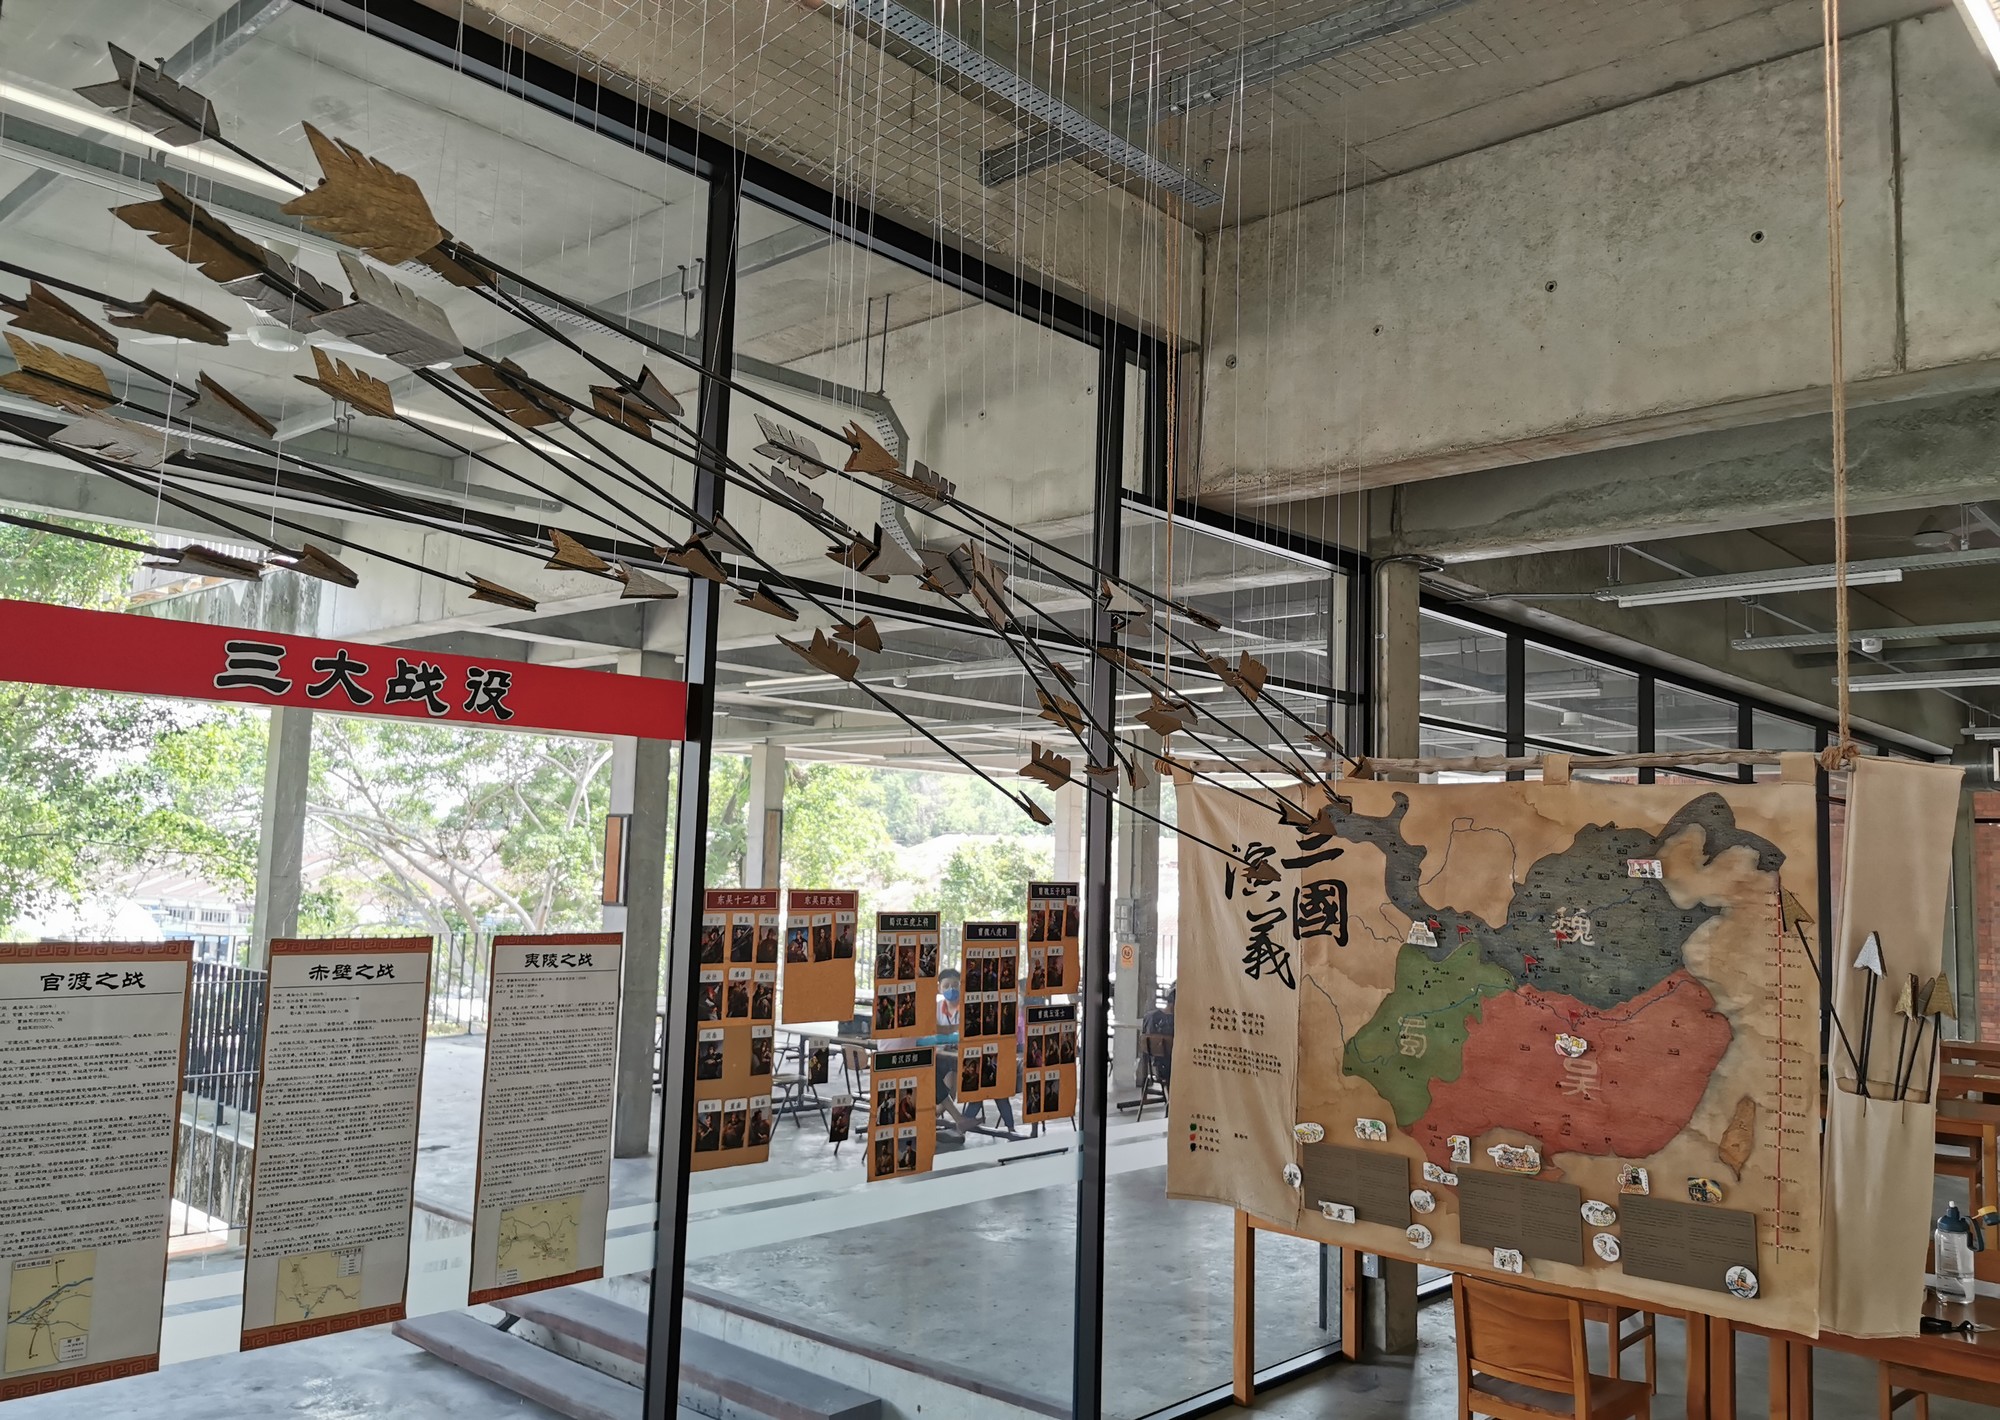 华仁中学打造活化阅读空间  体验《三国演义》《水浒传》世界